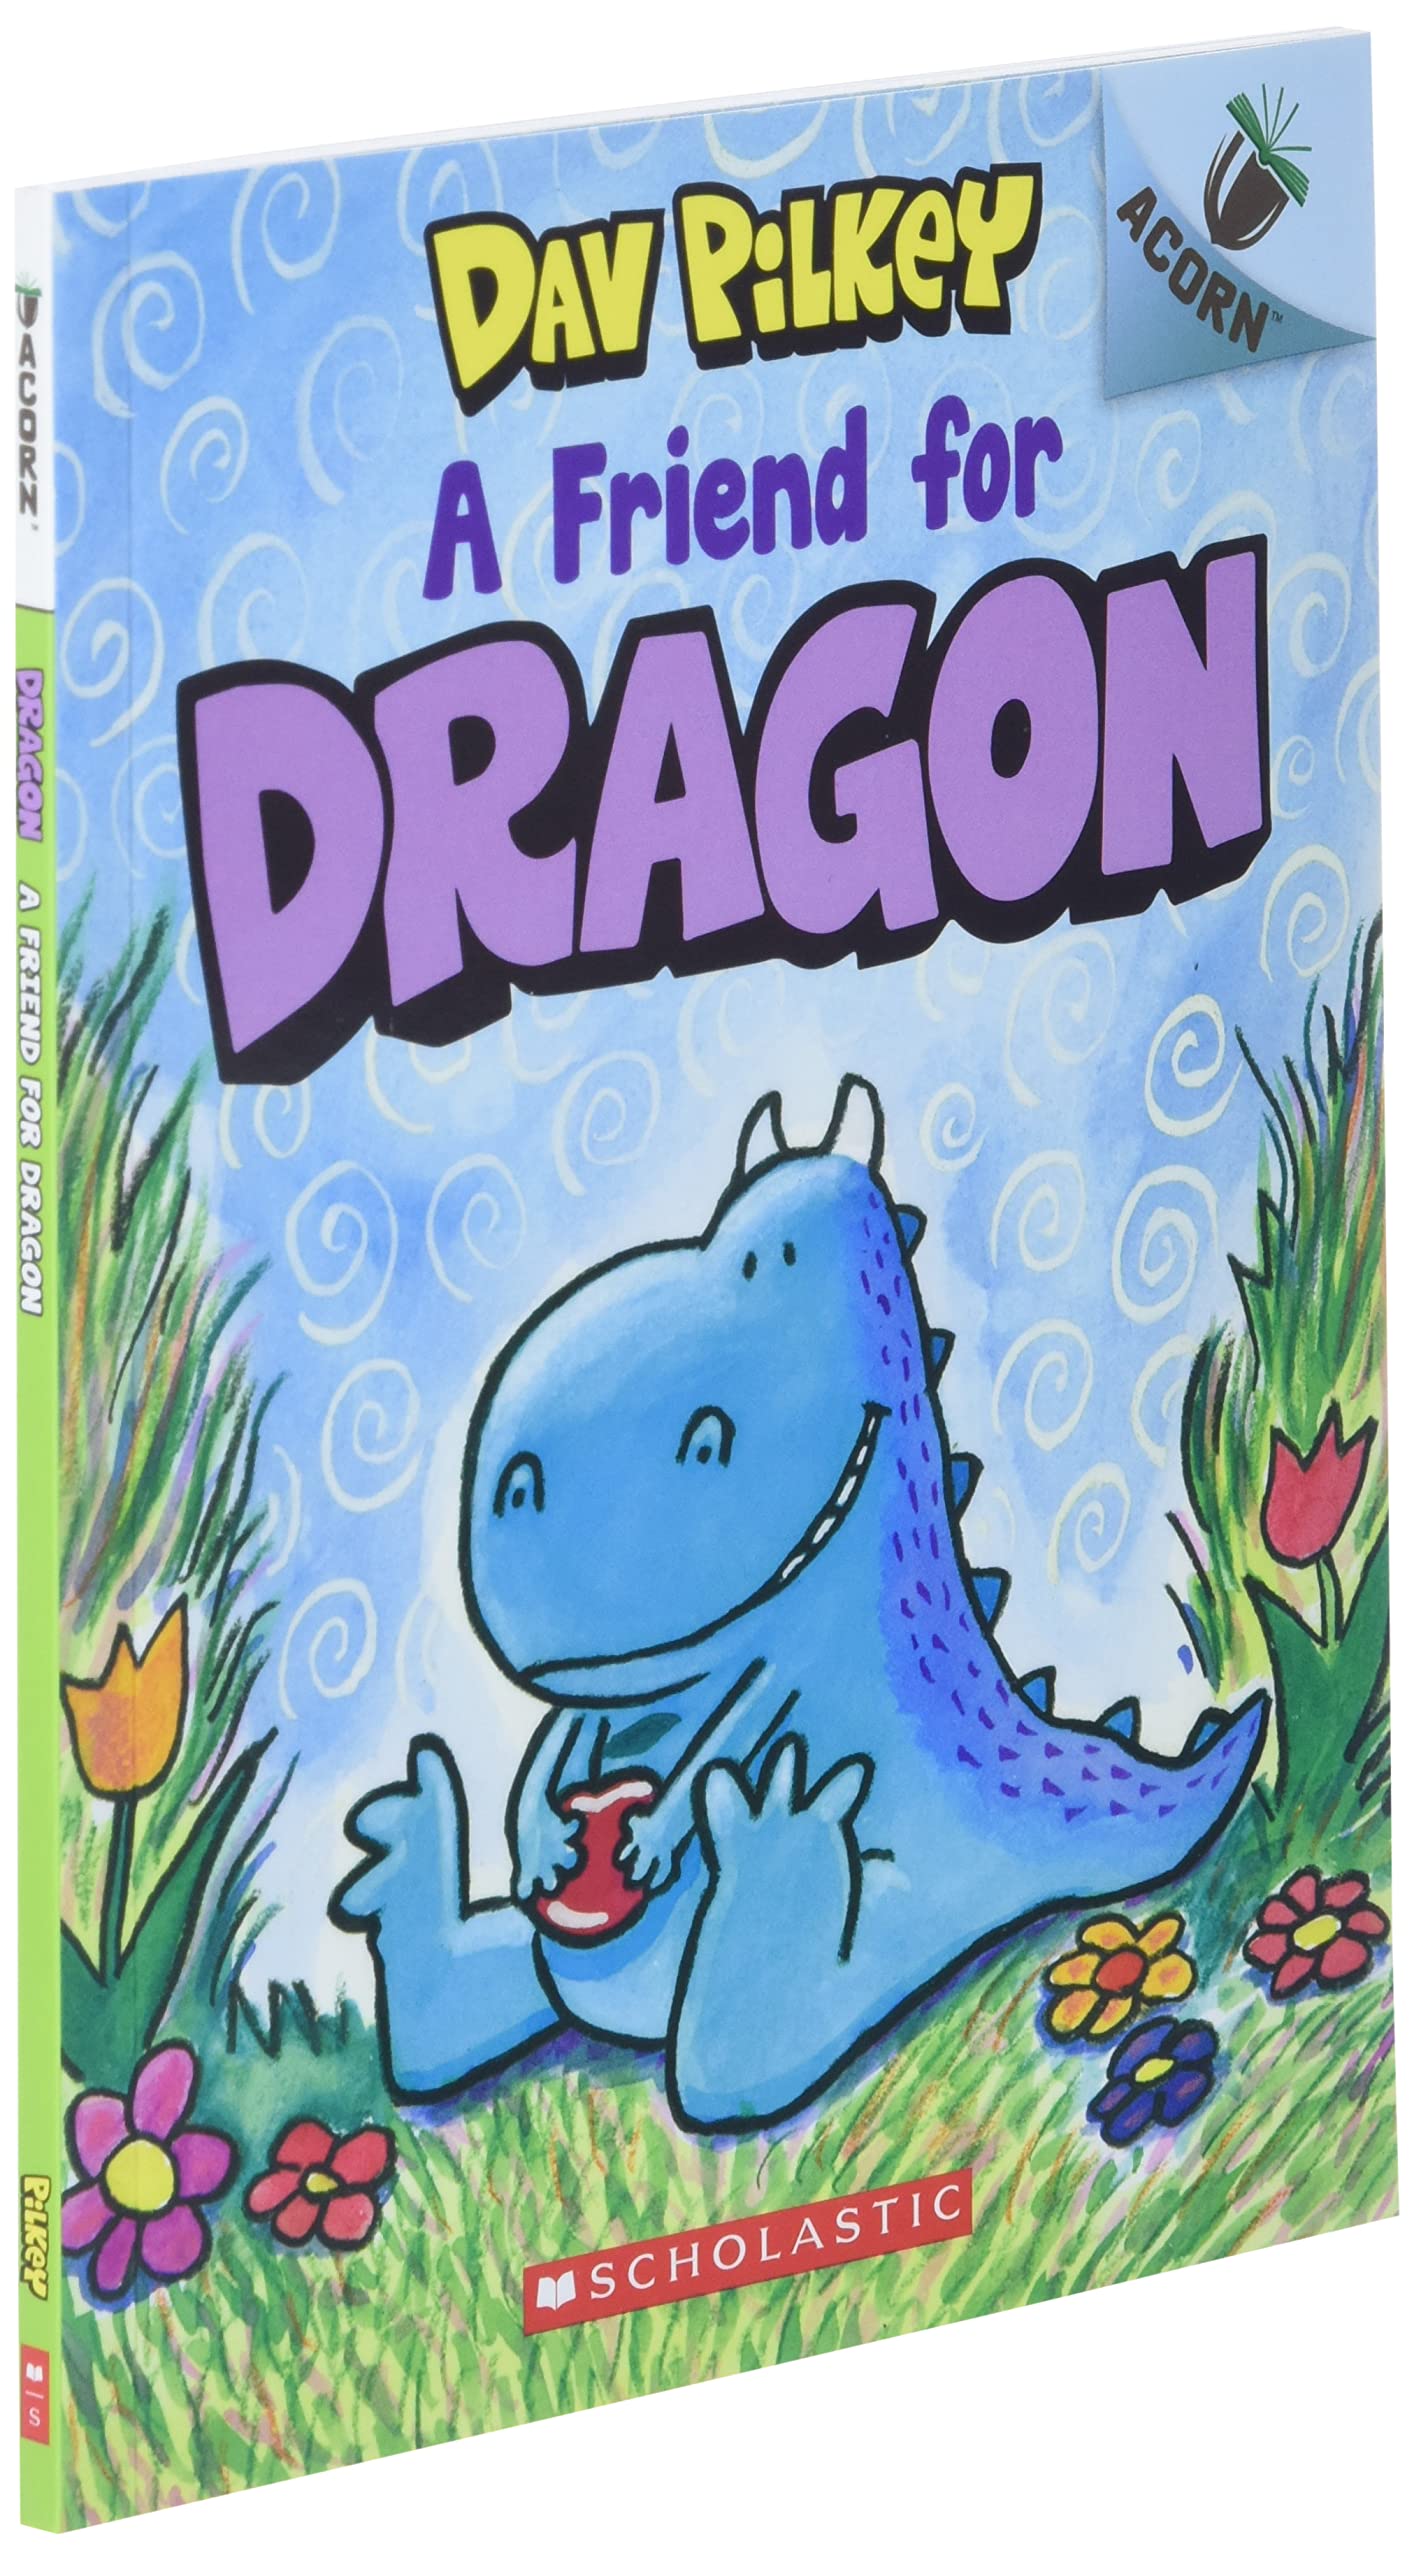 A Friend for Dragon: An Acorn Book (Dragon #1) (1)